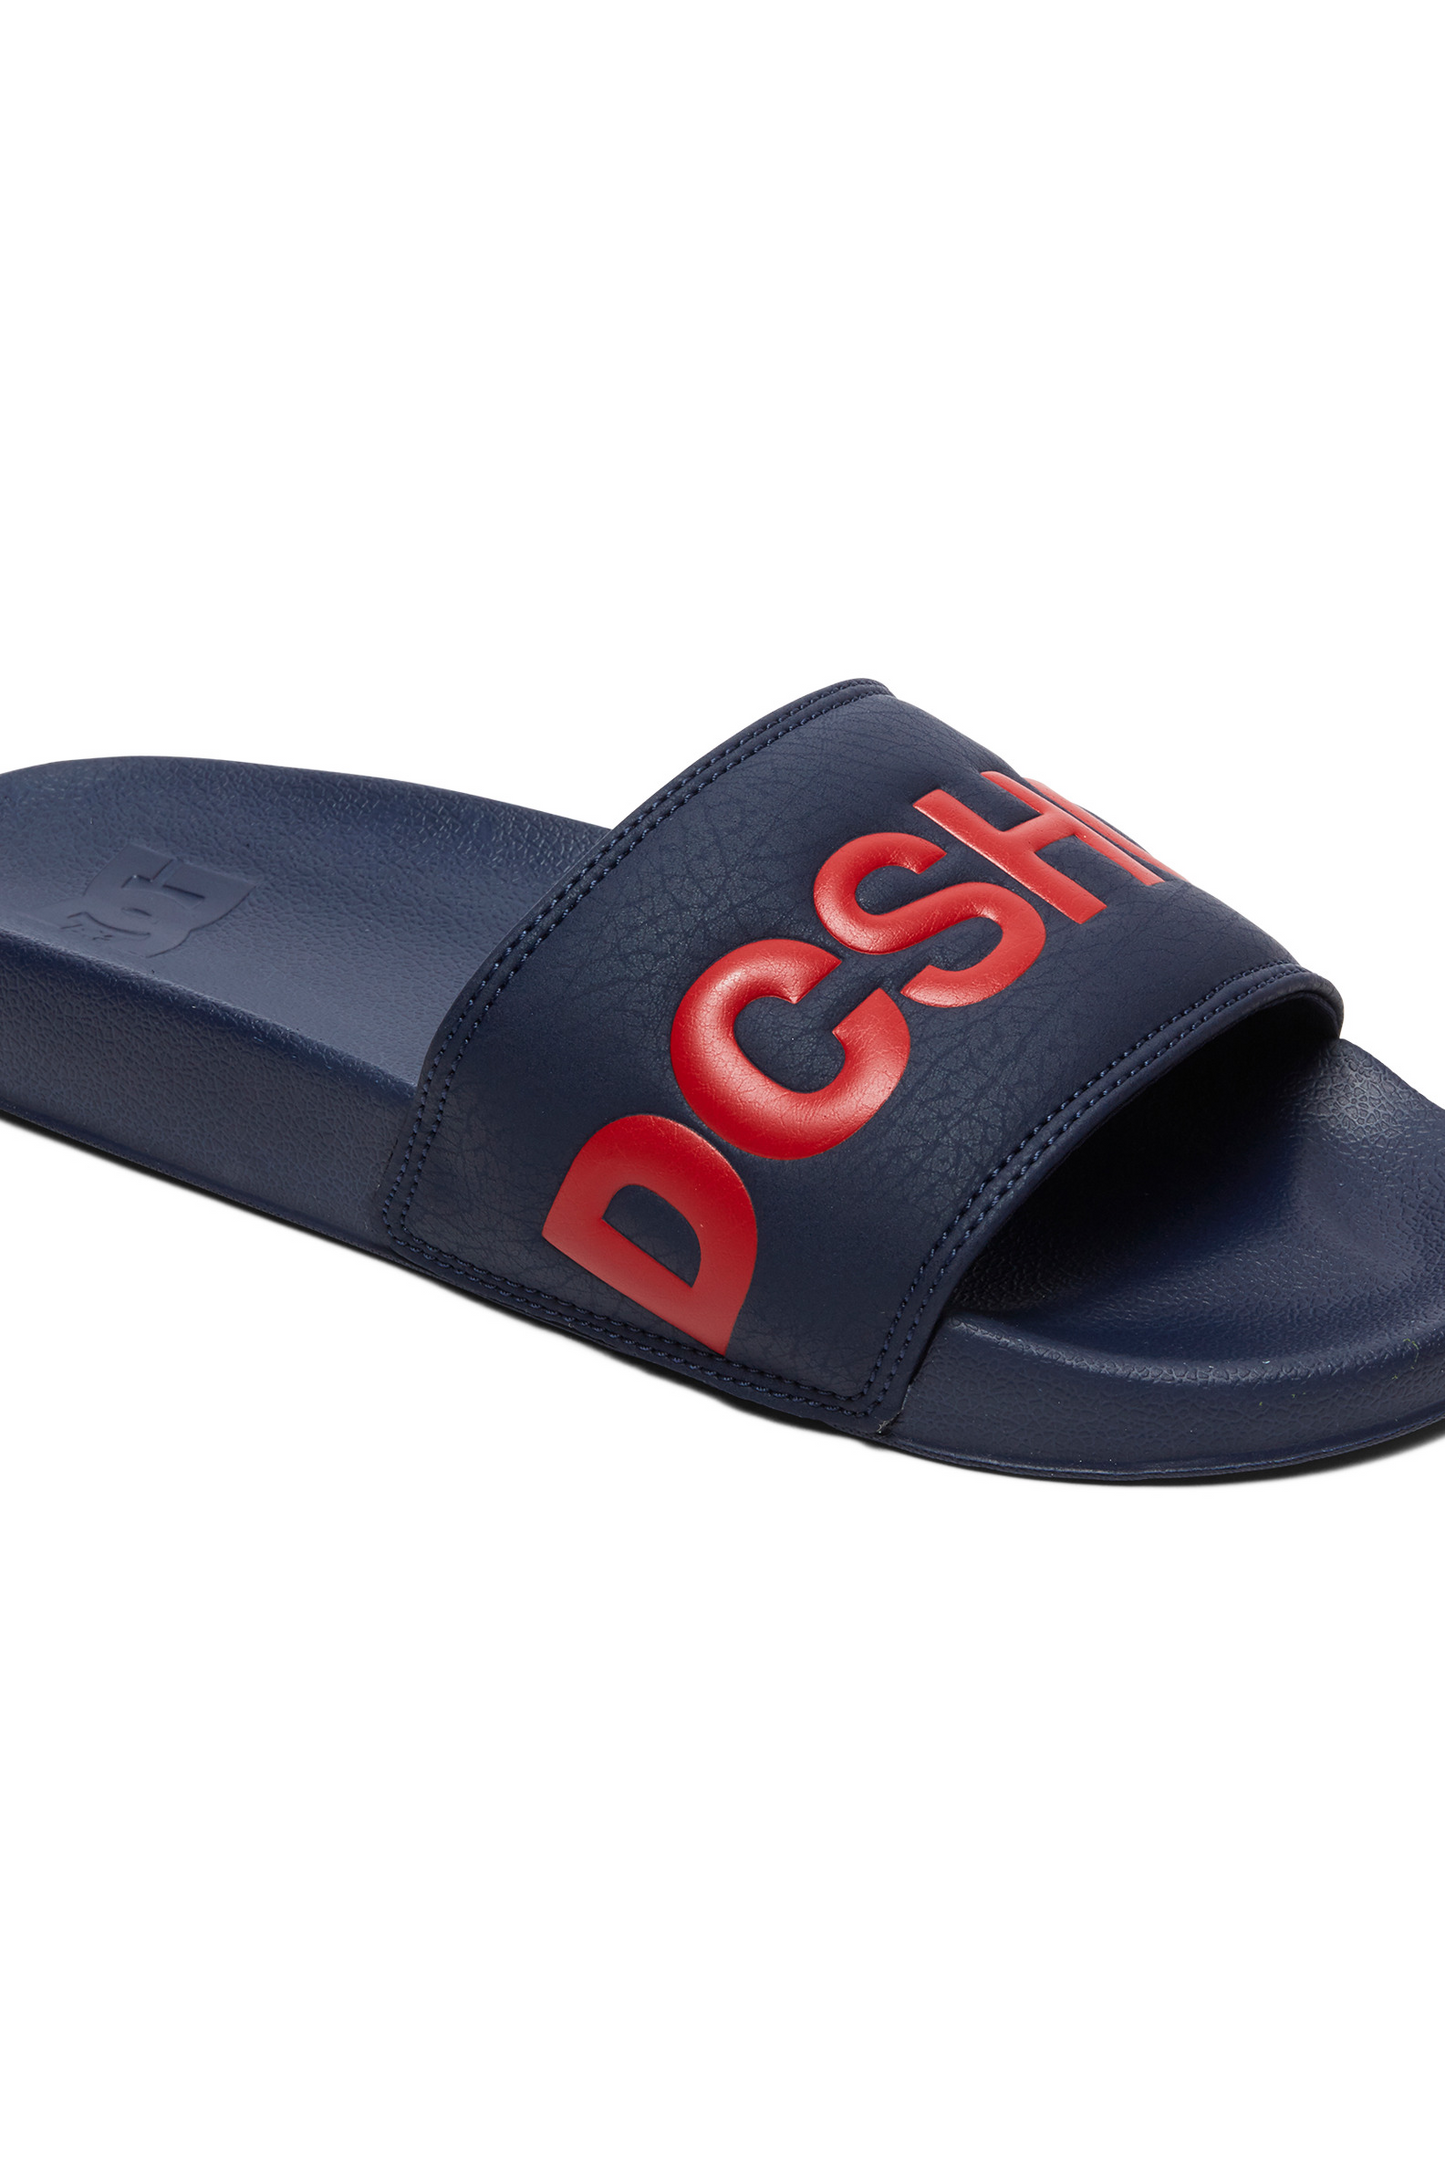 DC Slide - Sandals For Men.